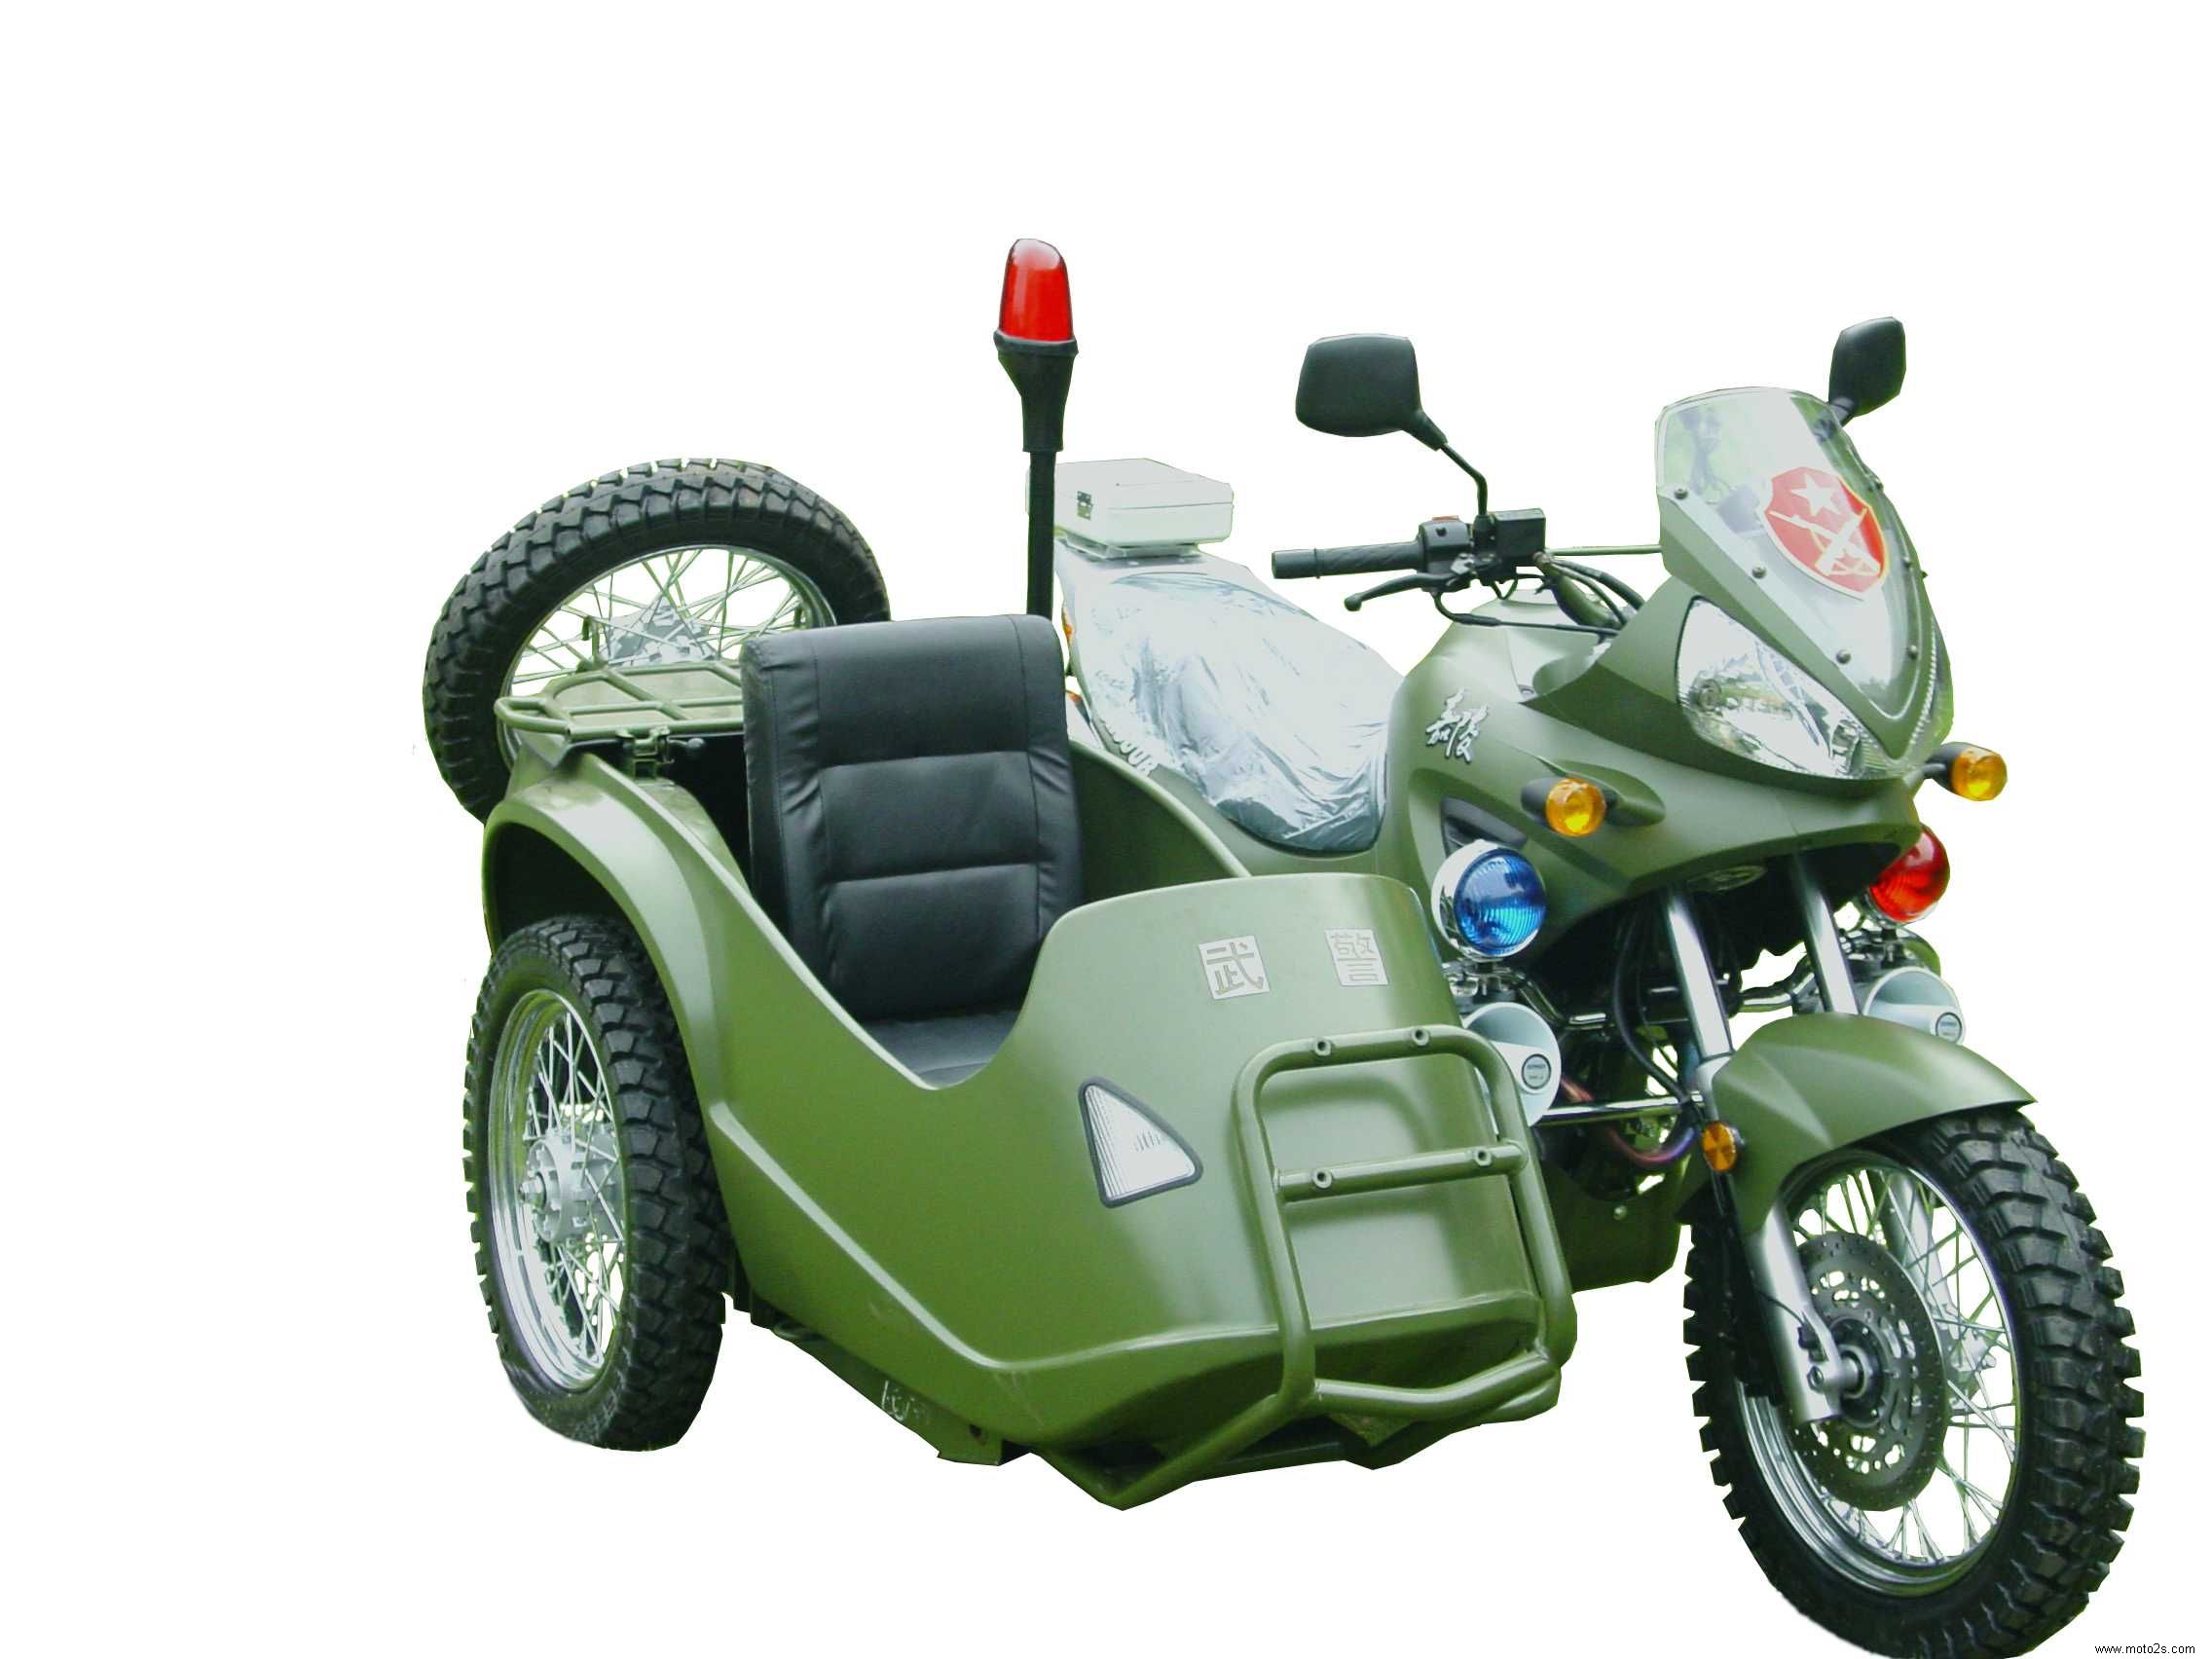 价格:45800嘉陵 jh600b 摩托车配置唯一可上牌的边三轮,配以可拆卸式